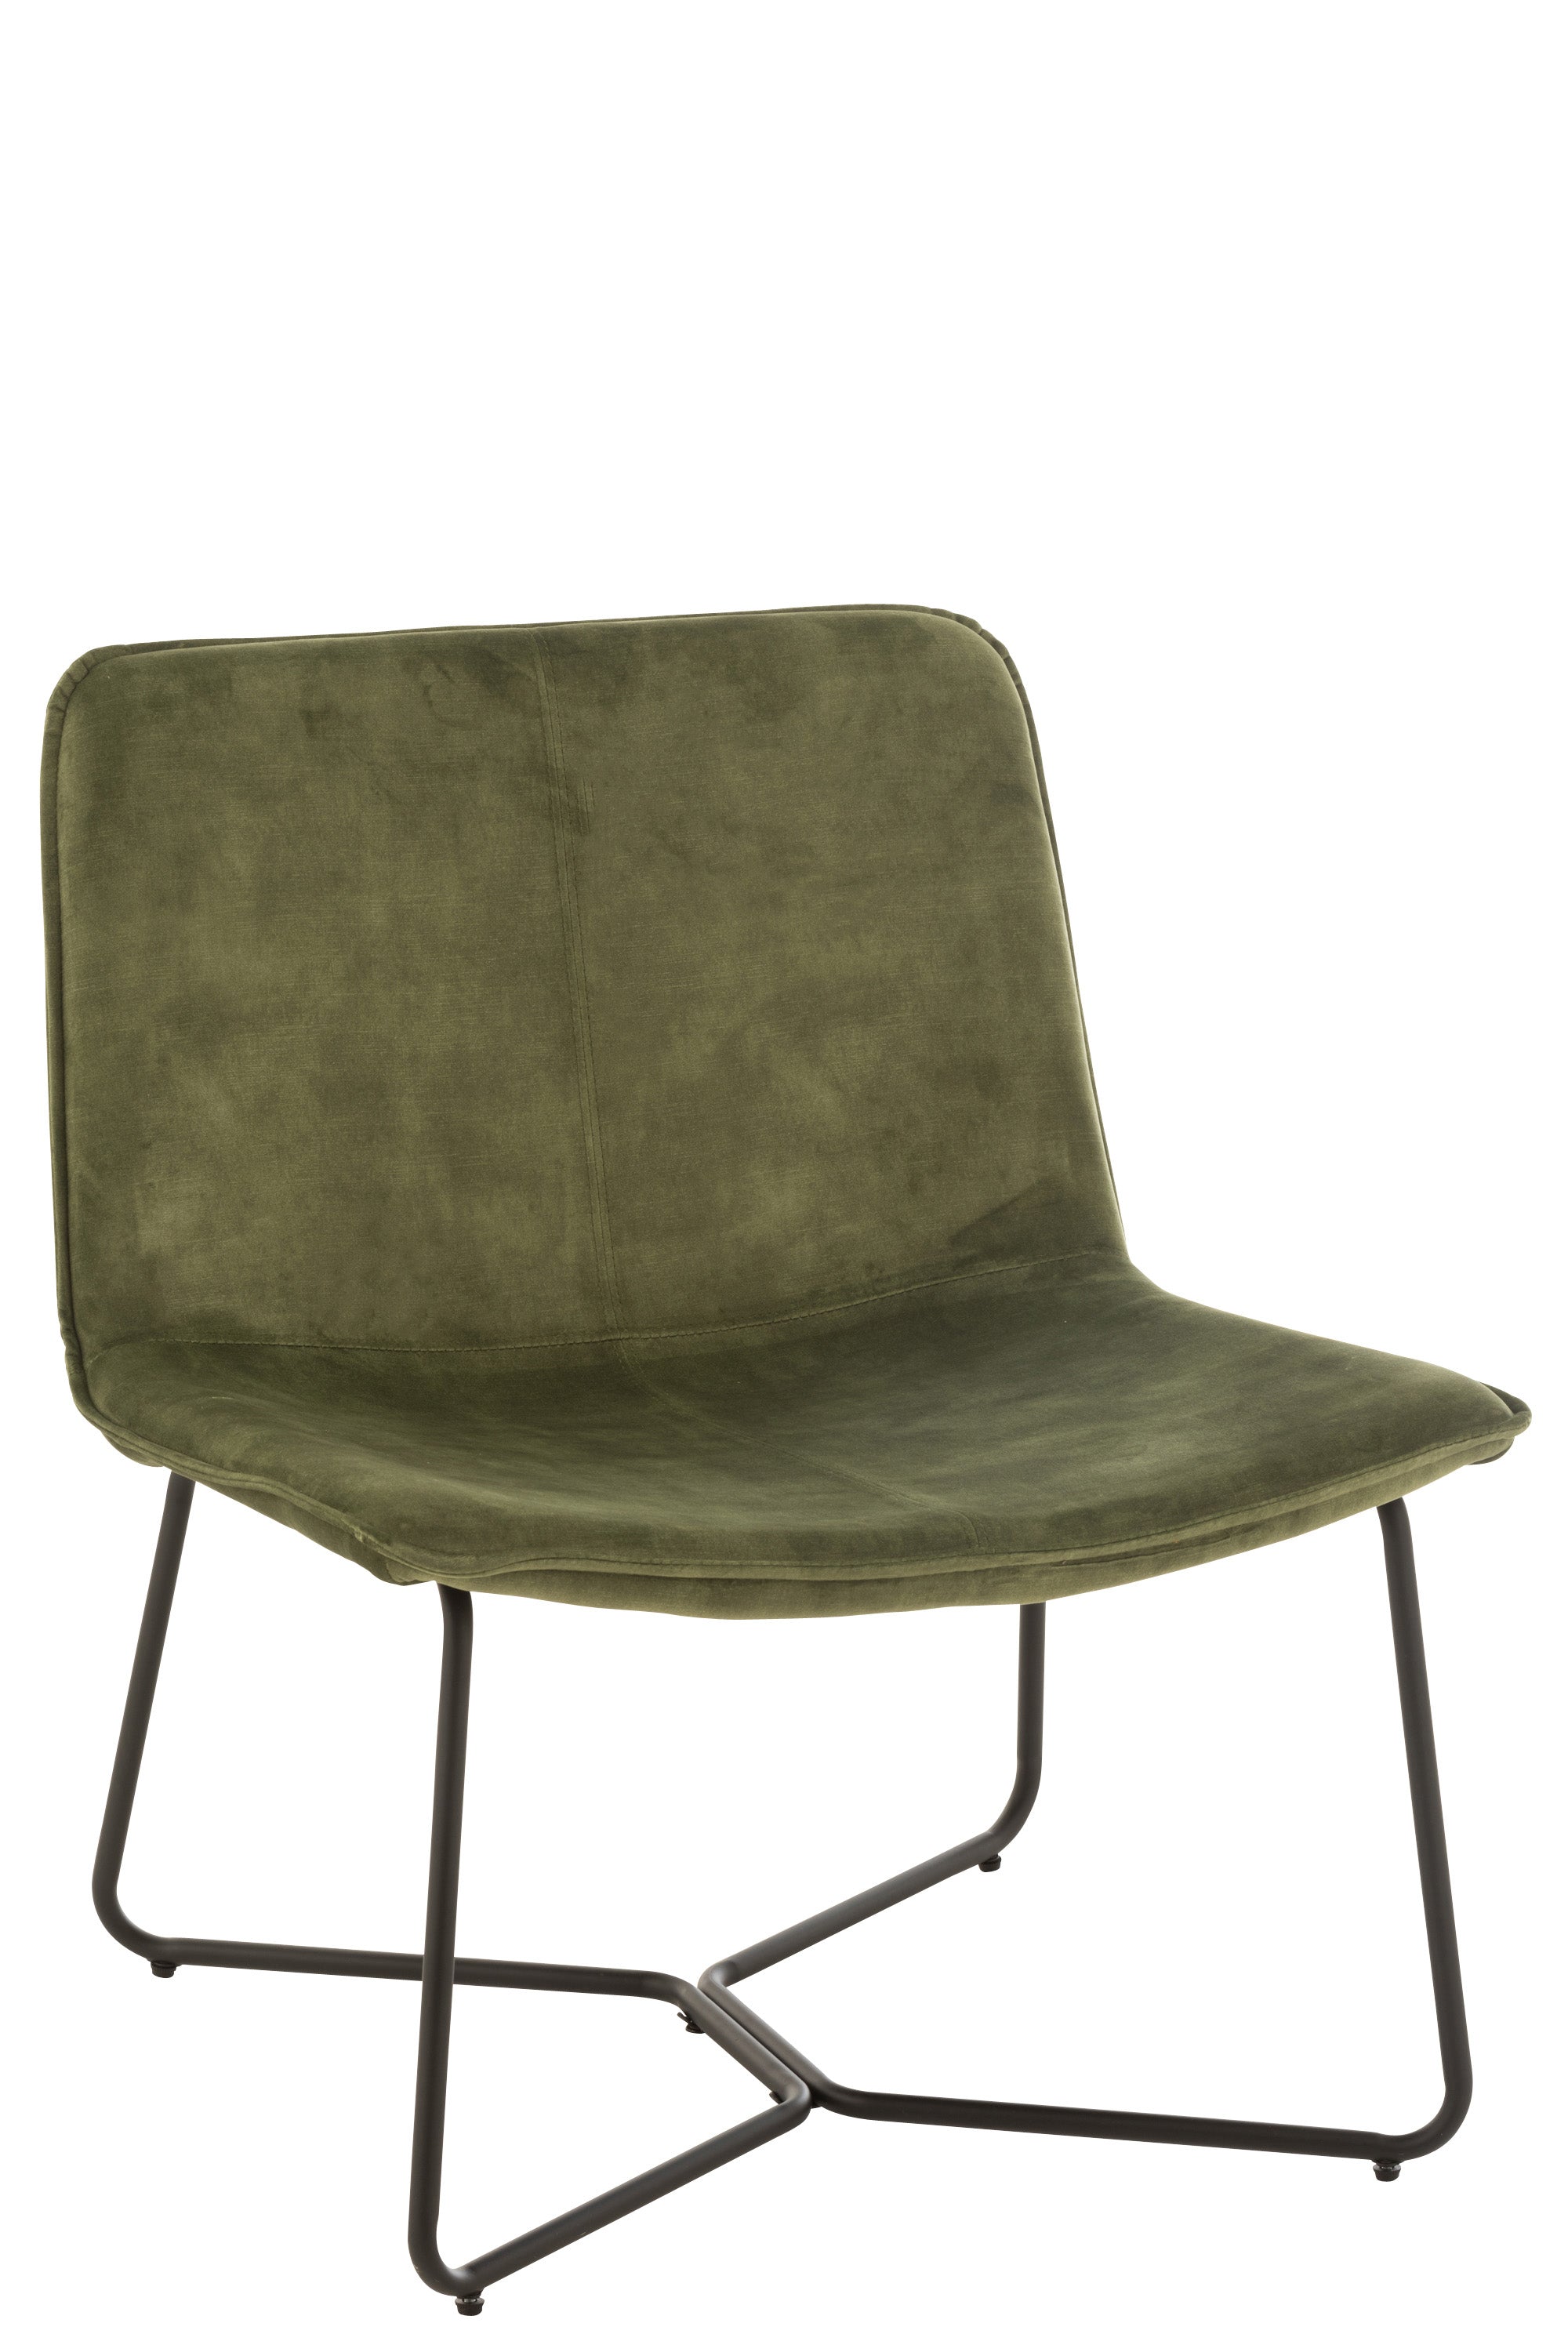 Breiter, gepolsteter Loungestuhl mit leichter Sitzvertiefung, bezogen mit grüner Mikrofaser, Lehne halbhoch, auf einem Gestell aus kufenartig gefertigtem grünem Metall. 